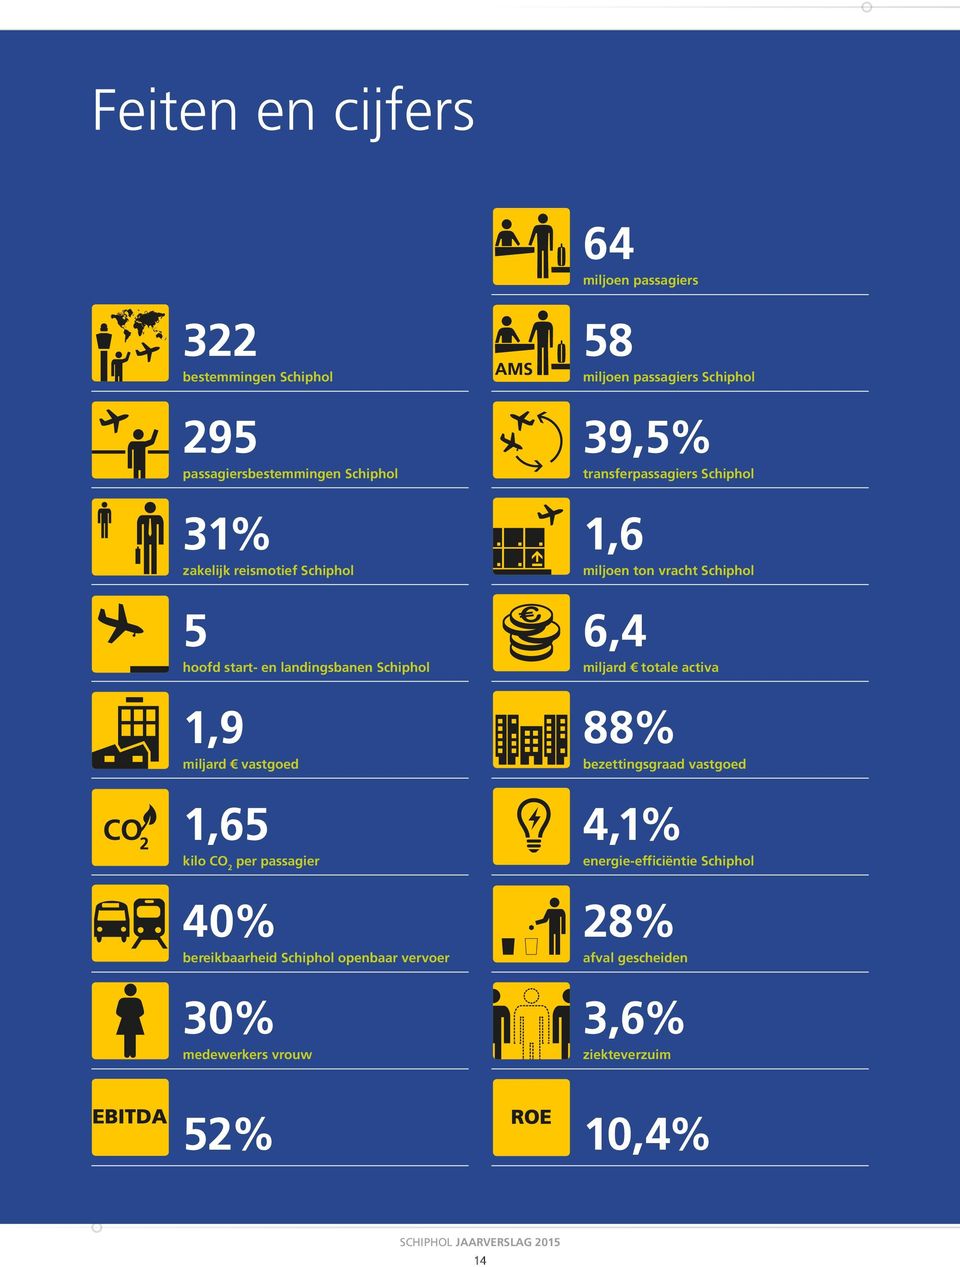 openbaar vervoer 30% medewerkers vrouw 58 miljoen passagiers Schiphol 39,5% transferpassagiers Schiphol 1,6 miljoen ton vracht